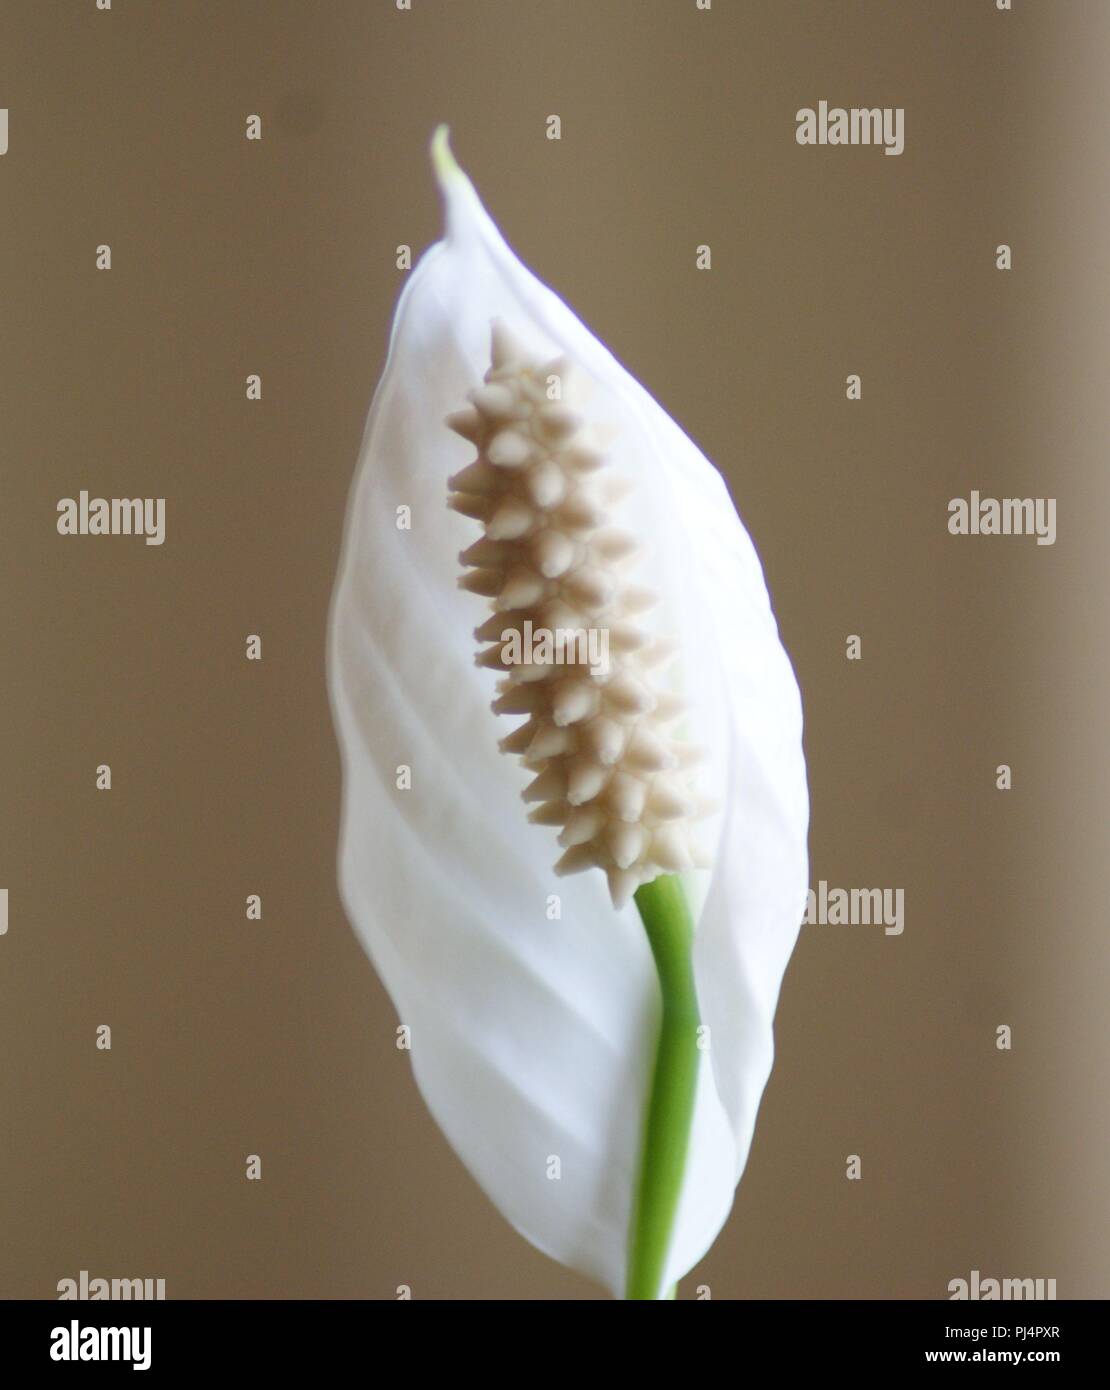 fleur blanche de Spathiphyllum sur fond beige, weiße Spathiphyllum-Blume auf beigem Hintergrund, white Spathiphyllum flower on beige background, Spath Stock Photo